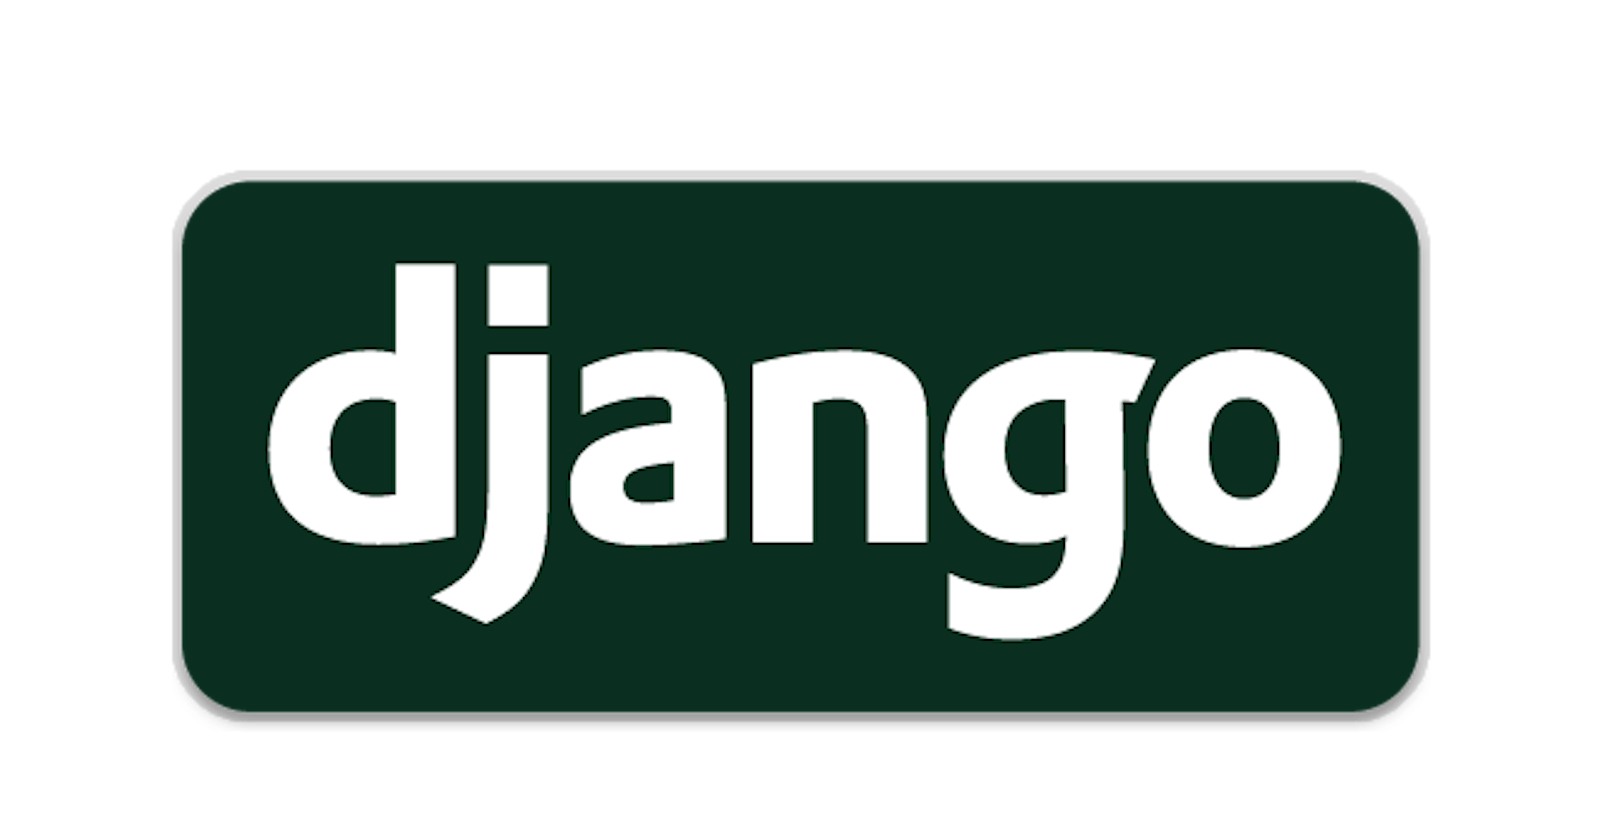 Creating a Django app